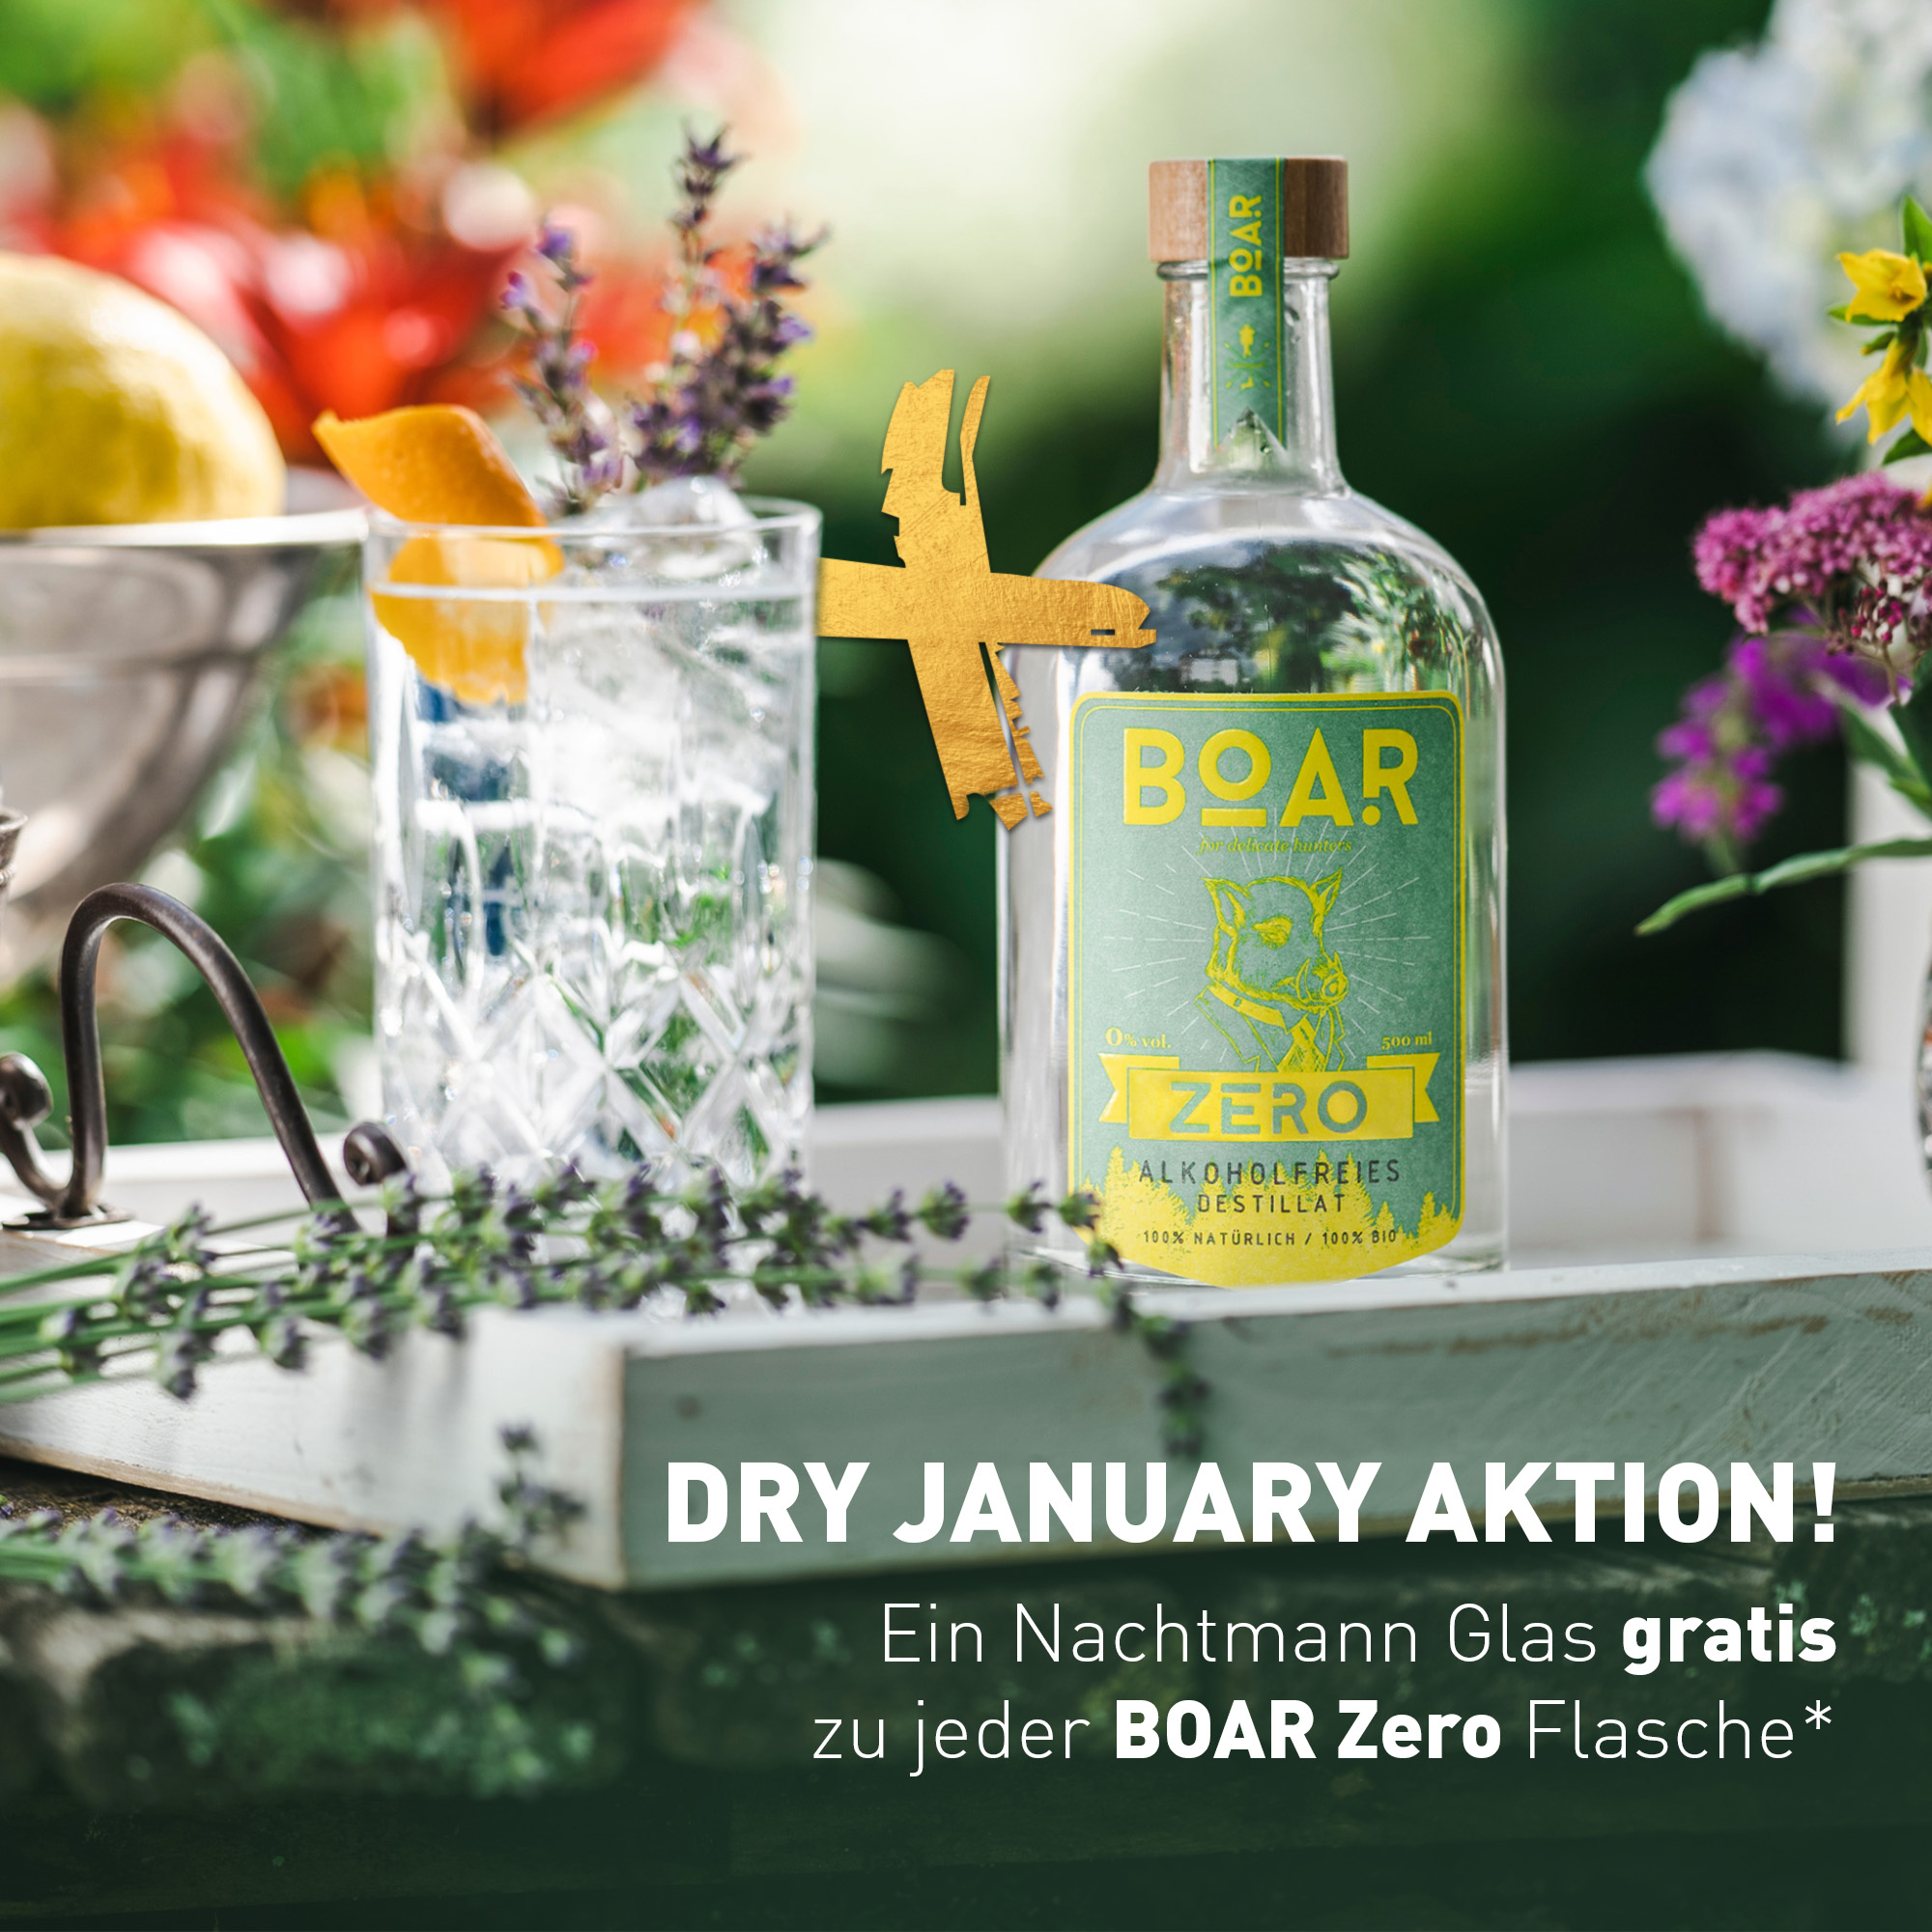 BOAR Zero: Die erfrischende Alternative im Januar! Gratis BOAR Nachtmannglas beim Kauf einer Flasche